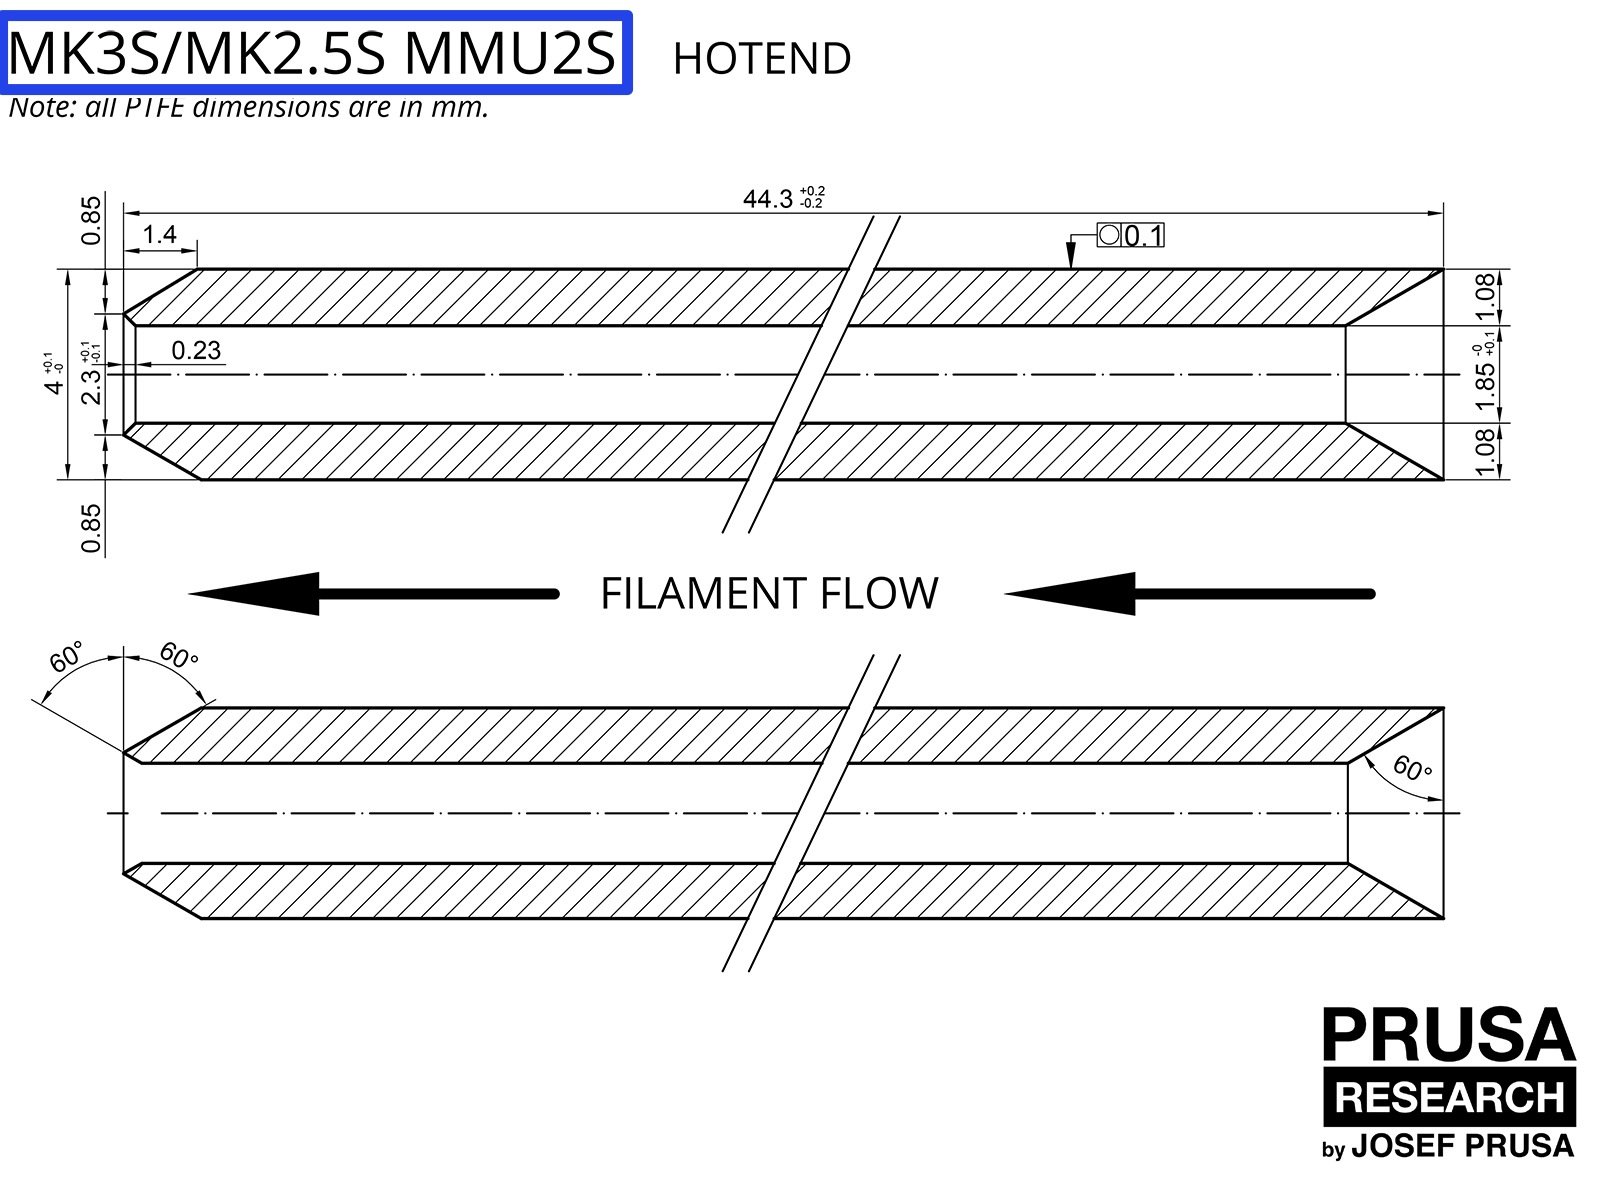 VERALTET: PTFE für den MK3S/MK2.5S MMU2S (Teil 1)